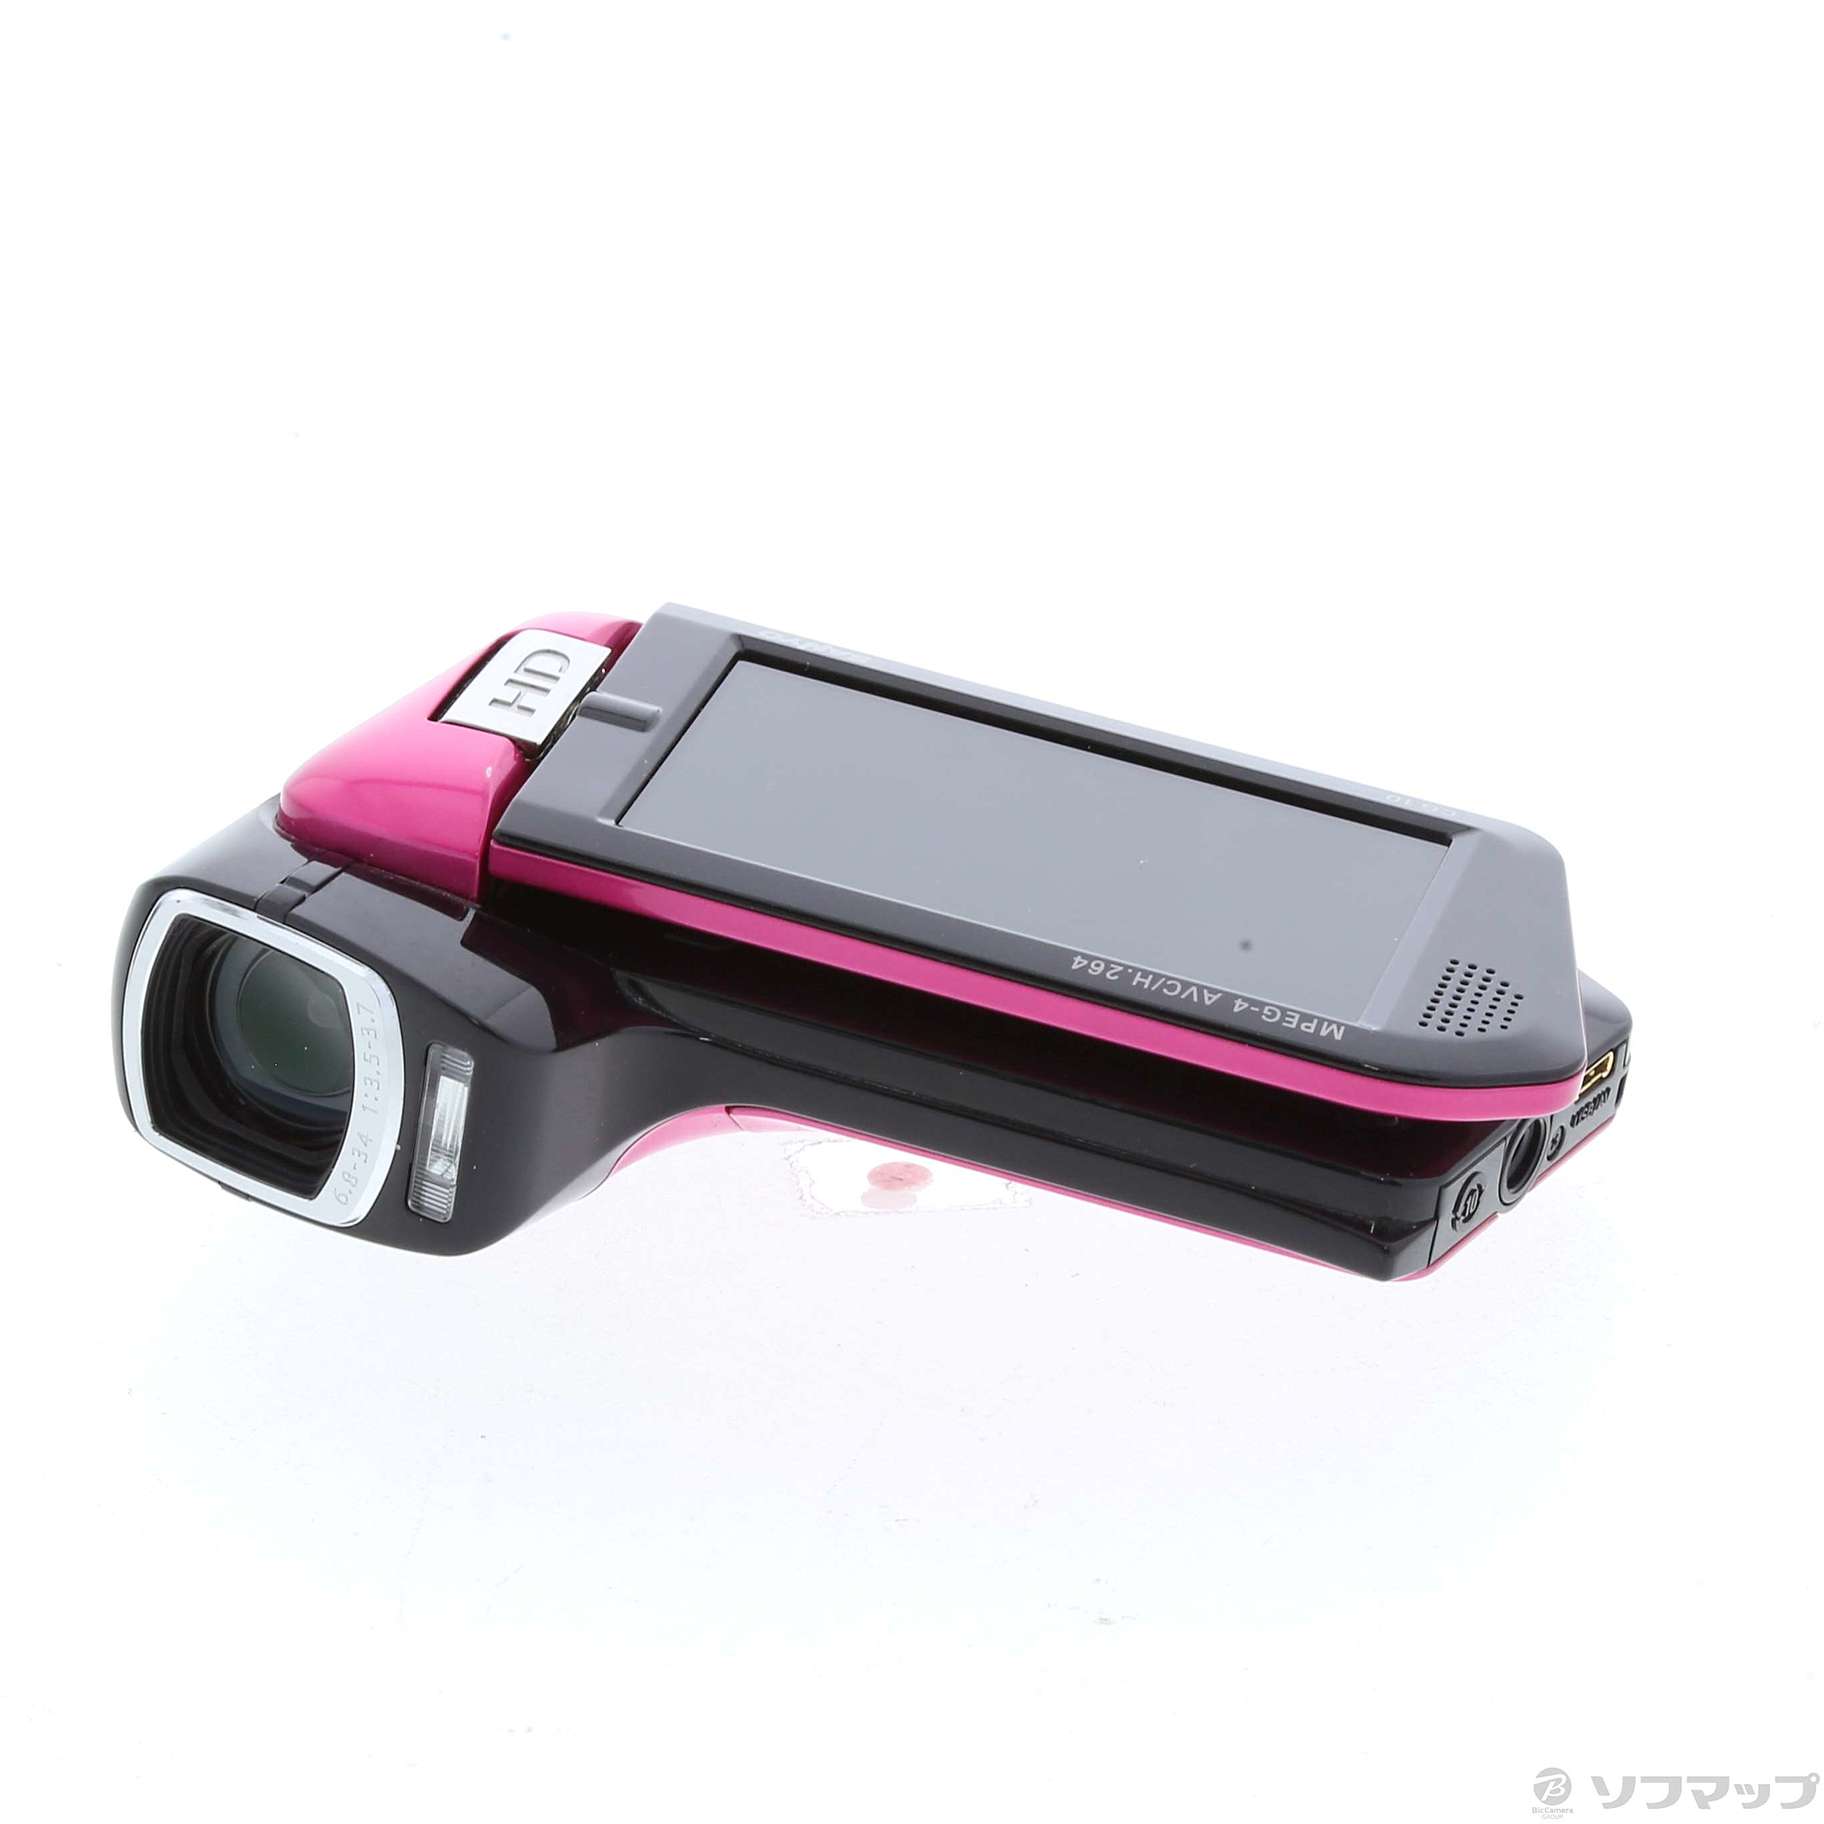 SANYO デジタルムービーカメラ 『Xacti』 DMX-CG10